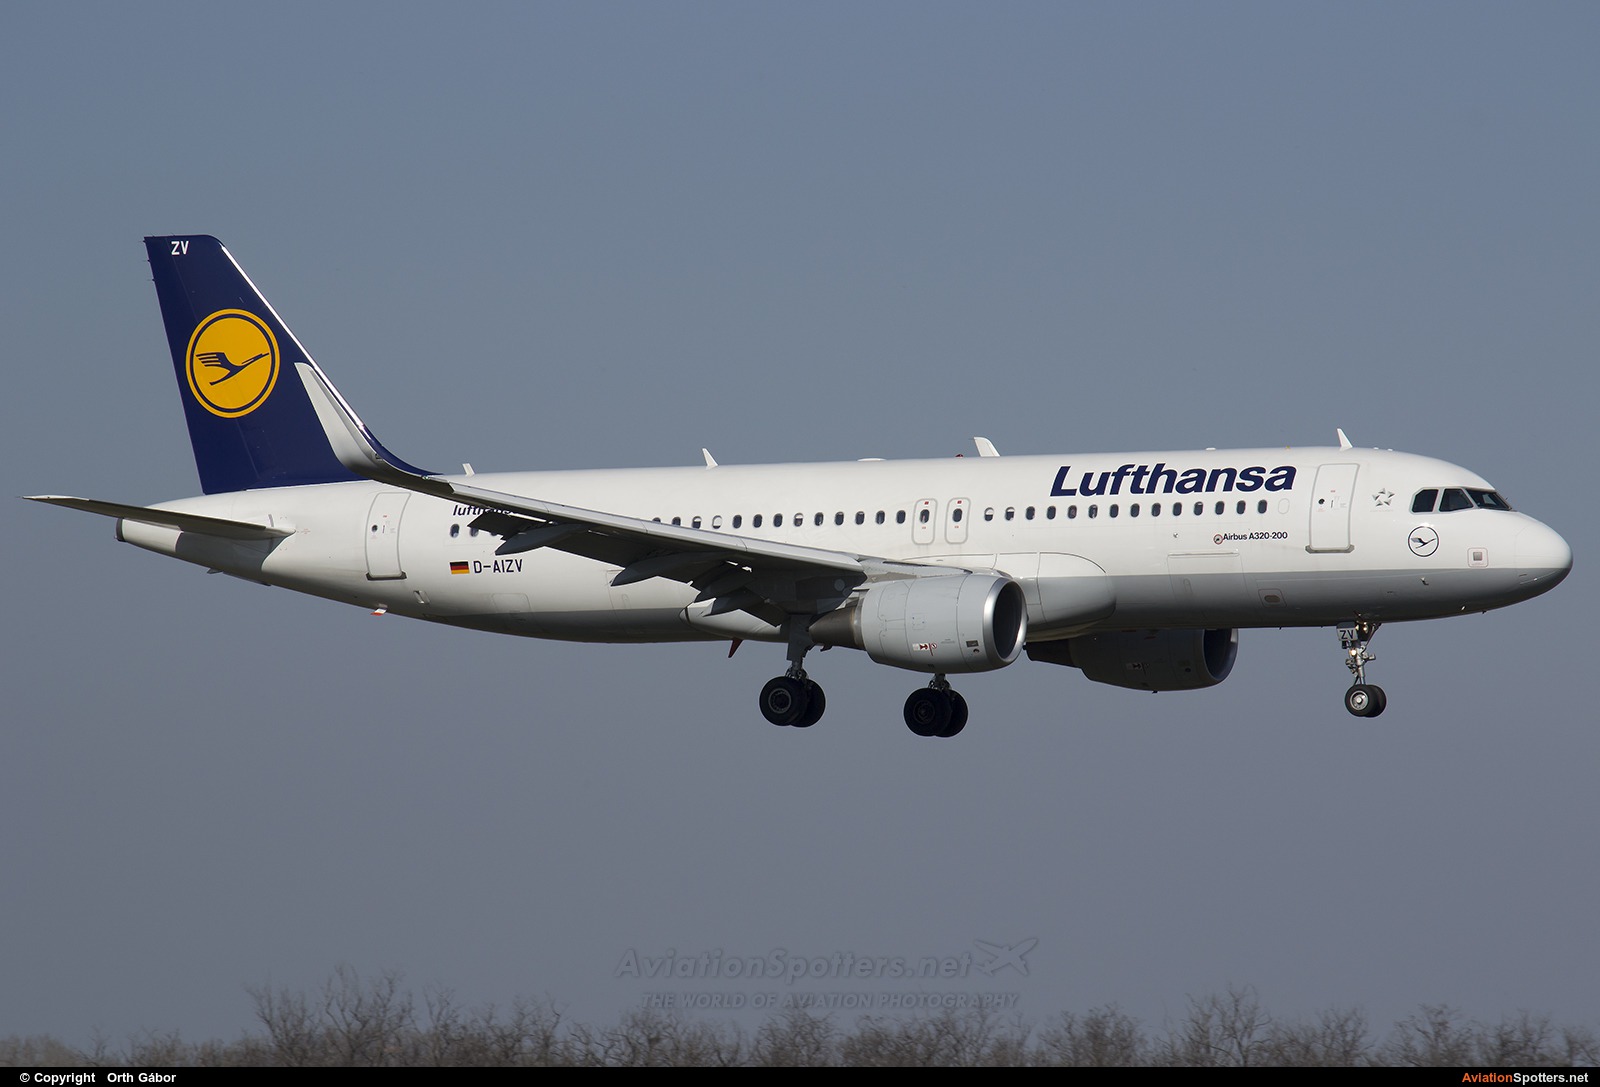 Lufthansa  -  A320  (D-AIZV) By Orth Gábor (Roodkop)